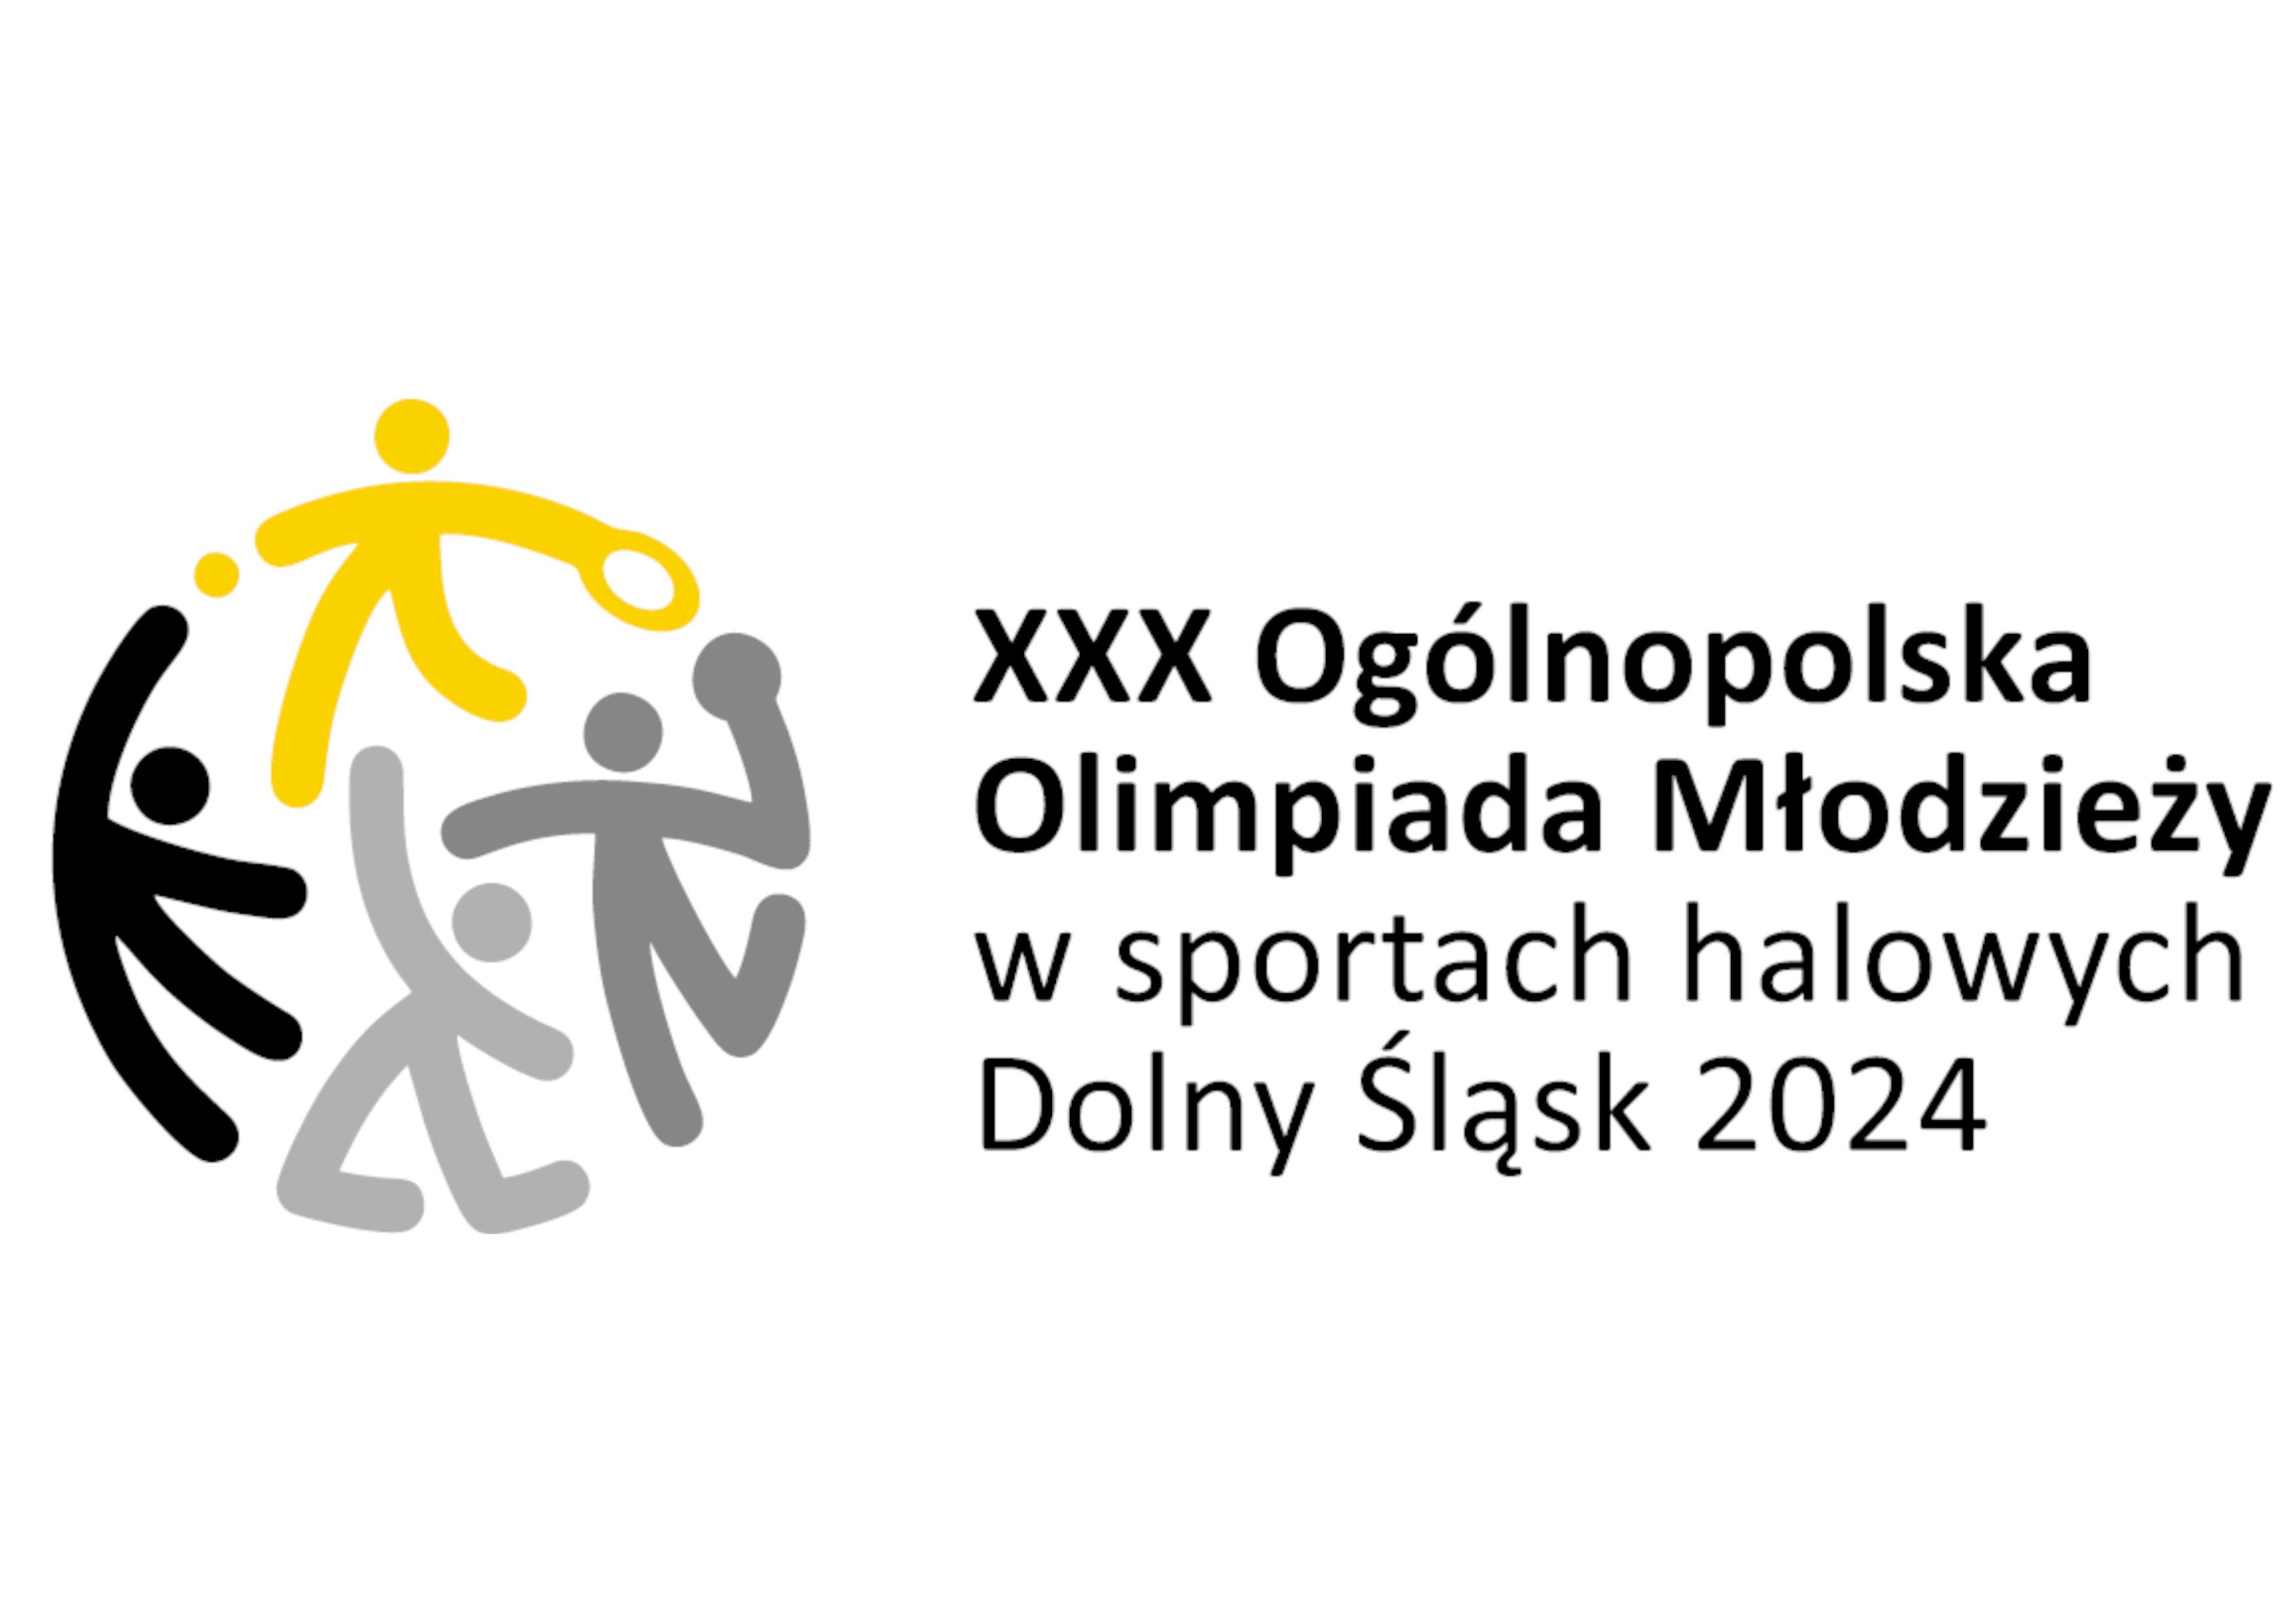 Ogólnopolska Olimpiada Młodzieży: Oliwia Wasiakowska i Zuzanna Gołębiewska w finale 54 kg